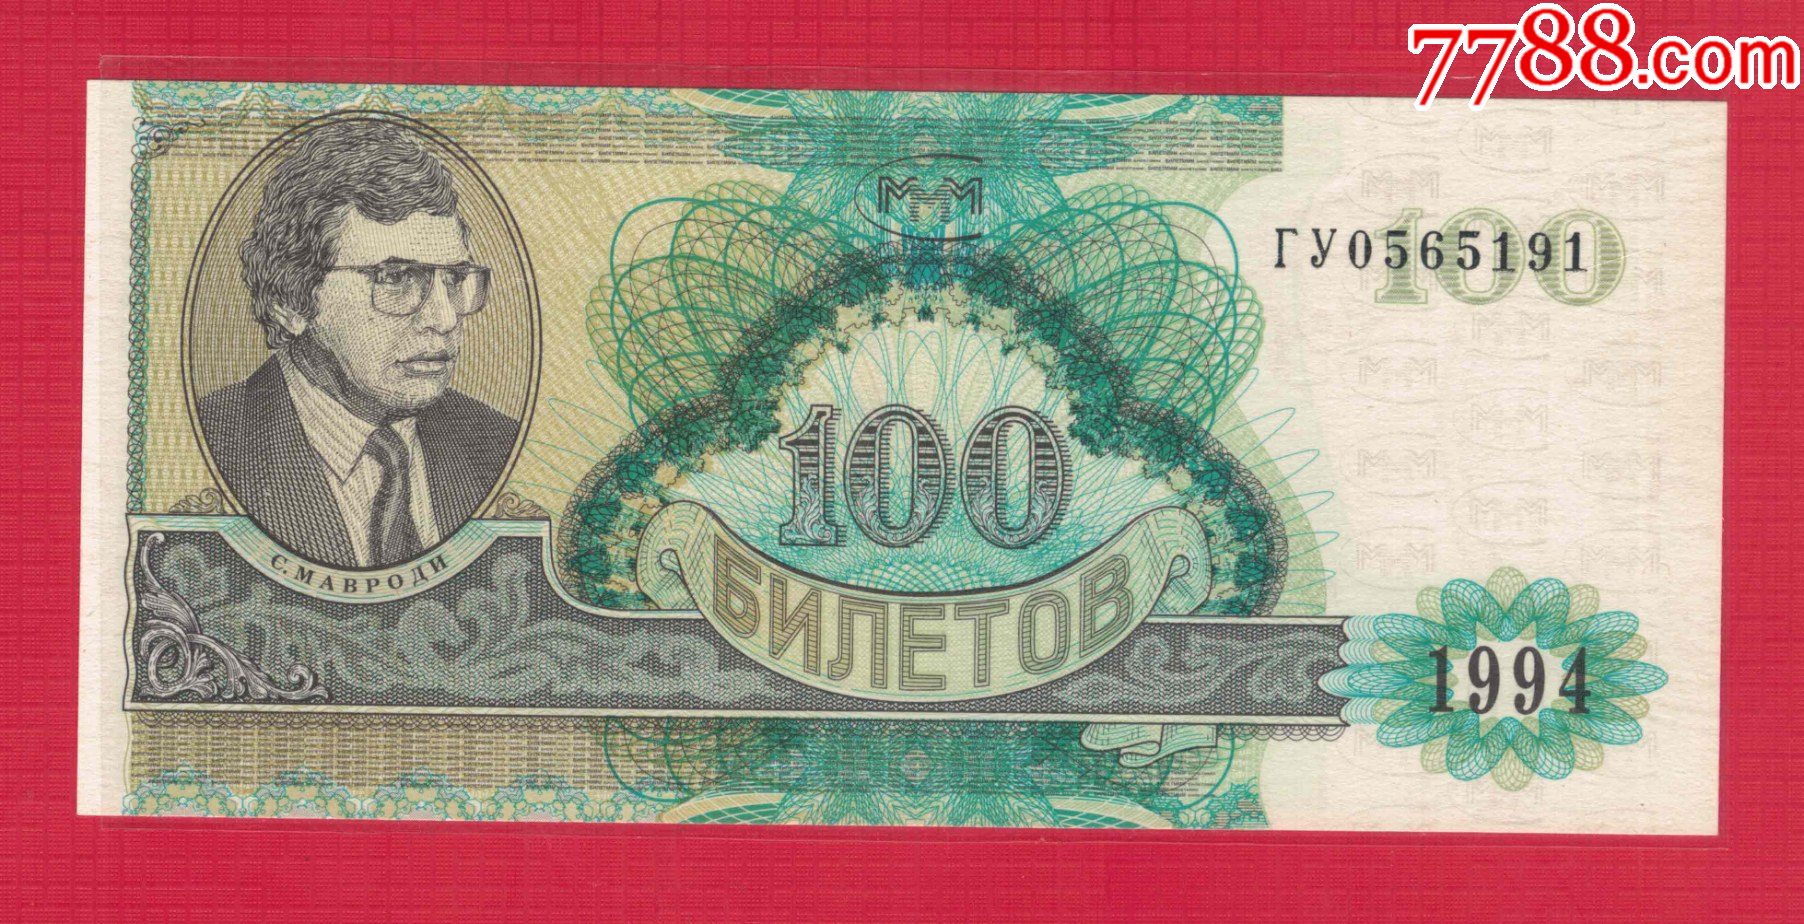 全新UNC 俄罗斯1997年版2010年 500卢布 中邮网[集邮/钱币/邮票/金银币/收藏资讯]收藏品商城